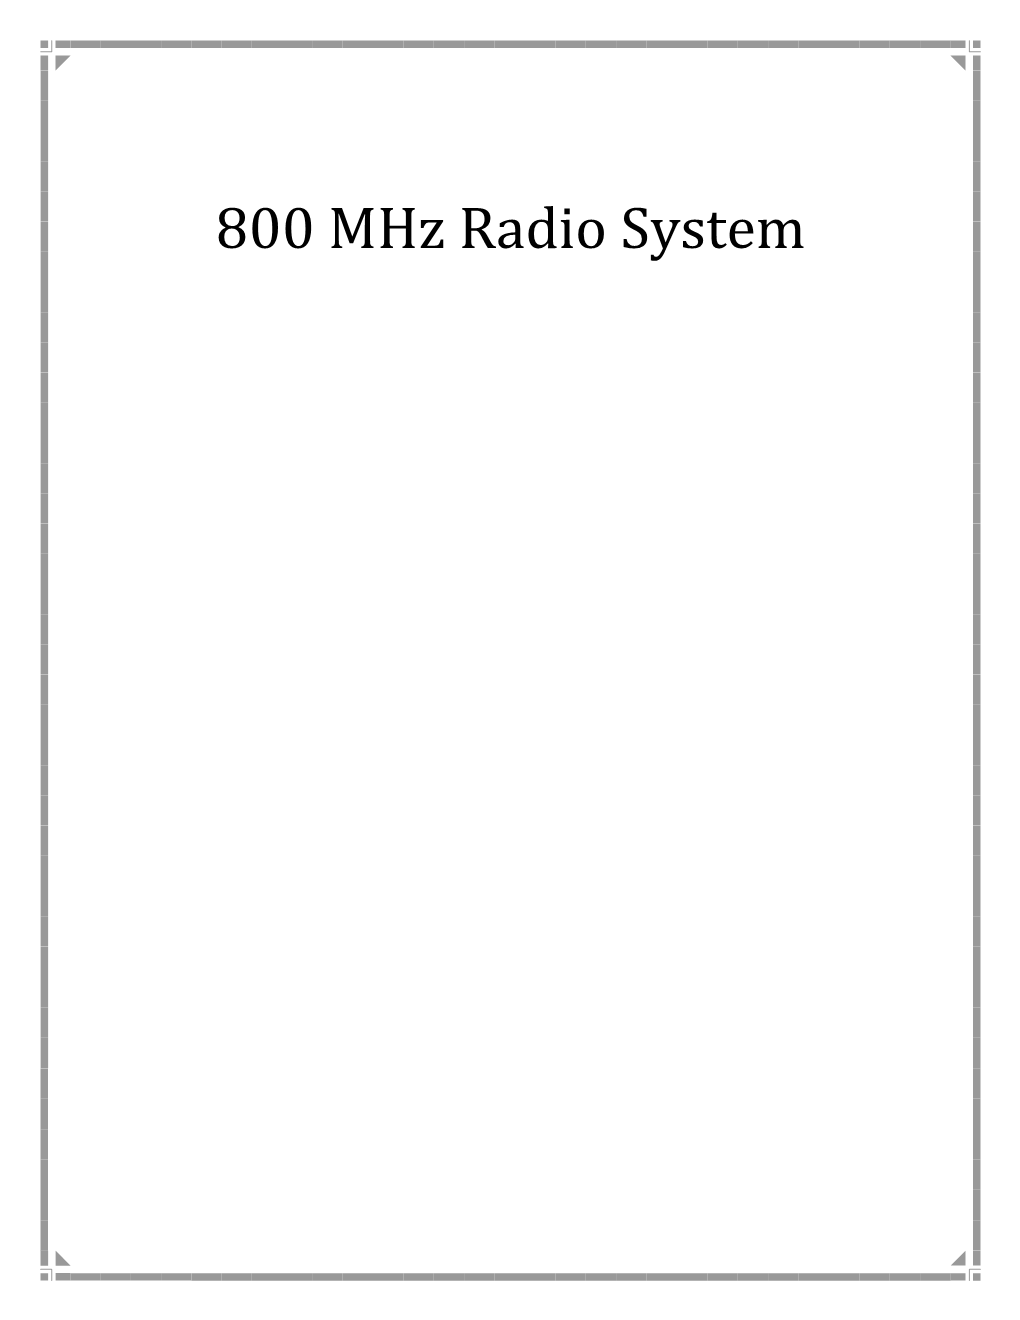 800 Mhz Radio System Public Safety Radio System Migration